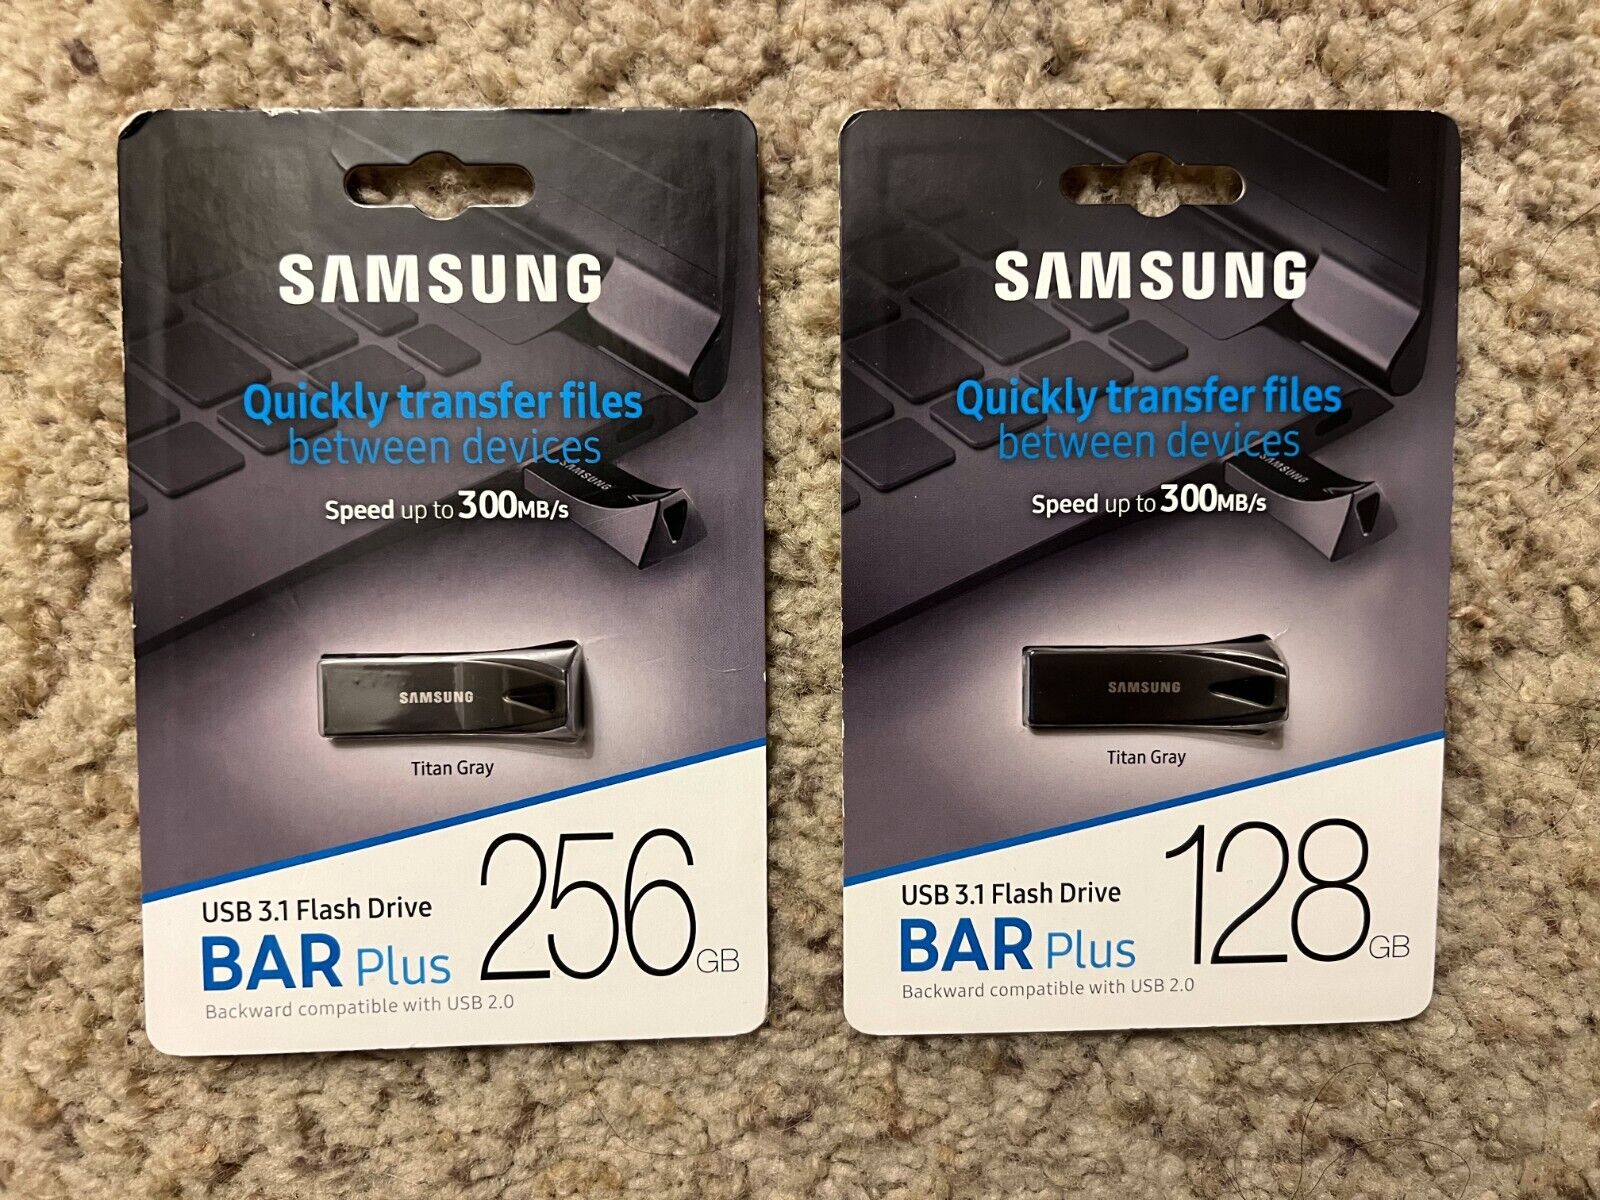 SAMSUNG 128GB + 256GB BAR Plus (Metal) USB 3.1 Flash Drives, Speed Up to 300MB/s